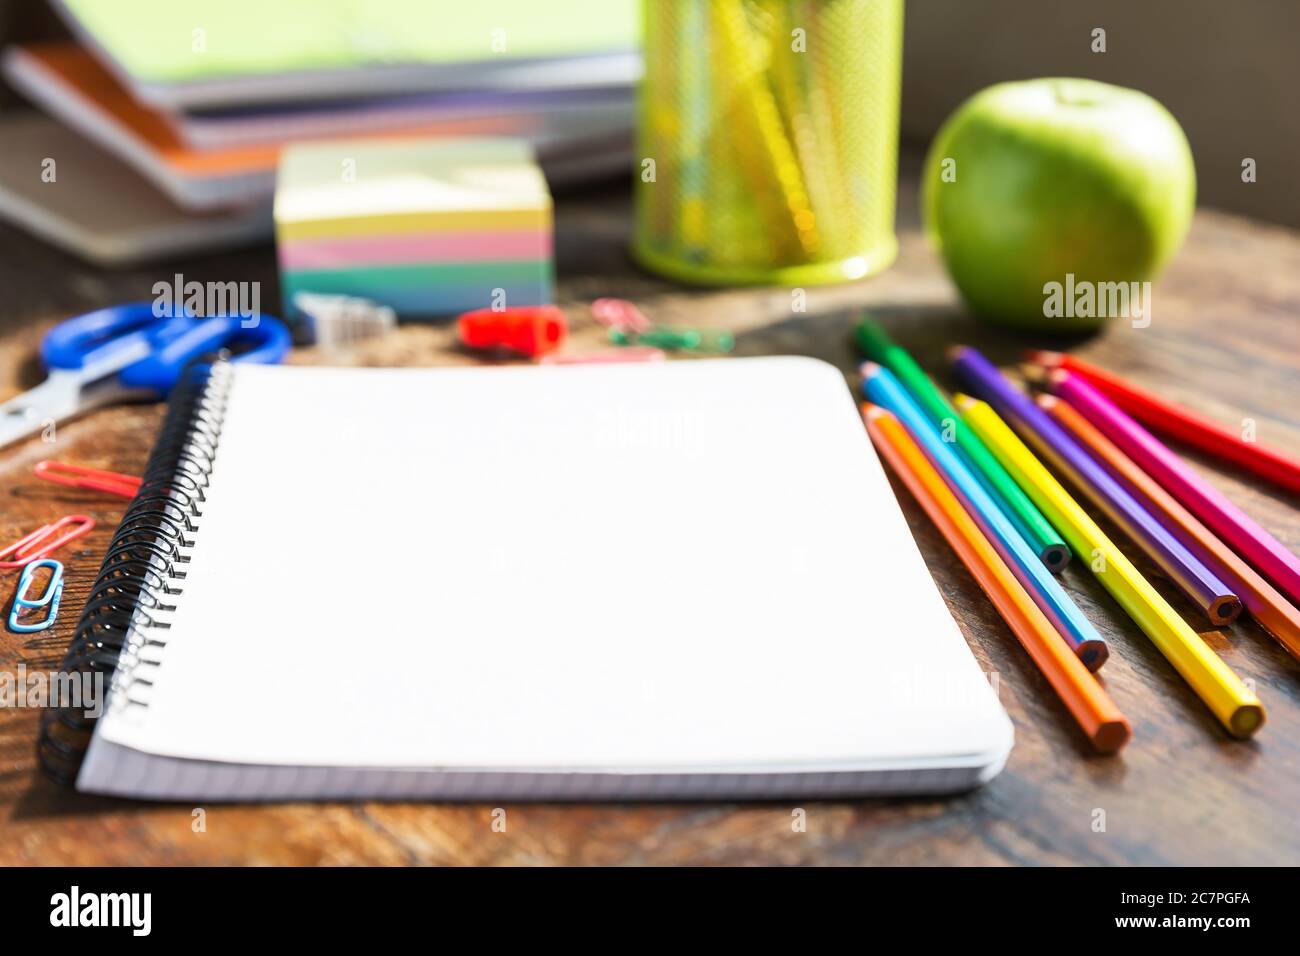 Zurück zur Schule: Notizbuch, Bleistifte, Lupe, grüner Apfel auf Holztisch Stockfoto